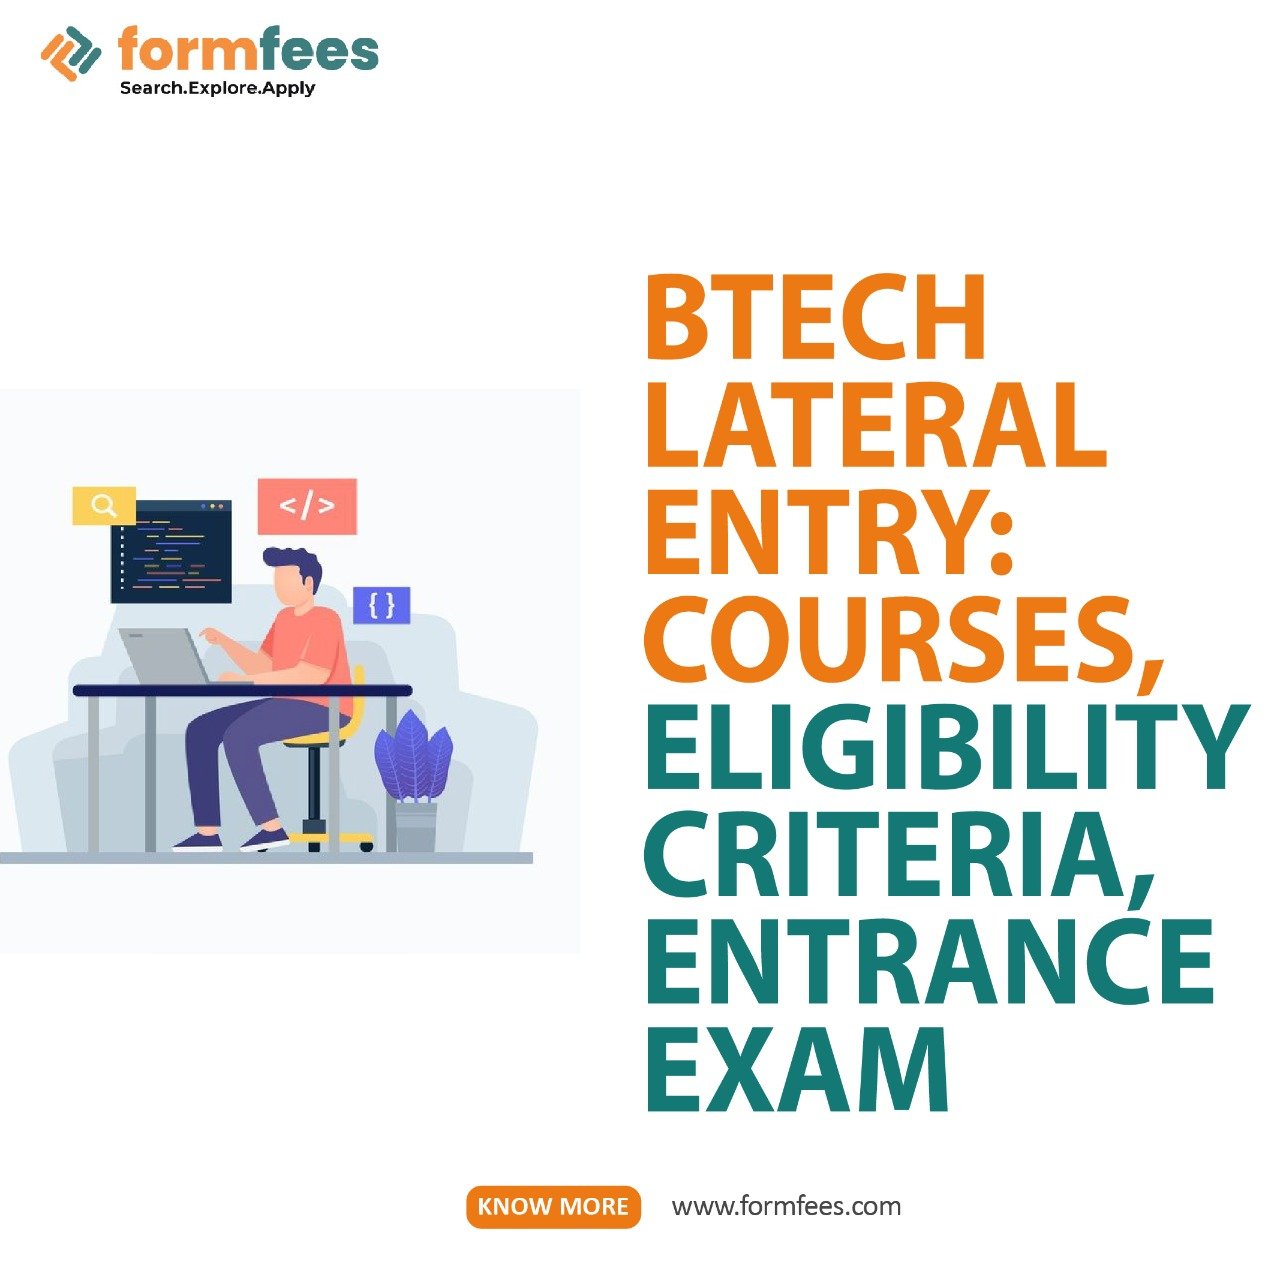 BTech Lateral Entry: Courses, Eligibility Criteria, Entrance Exam